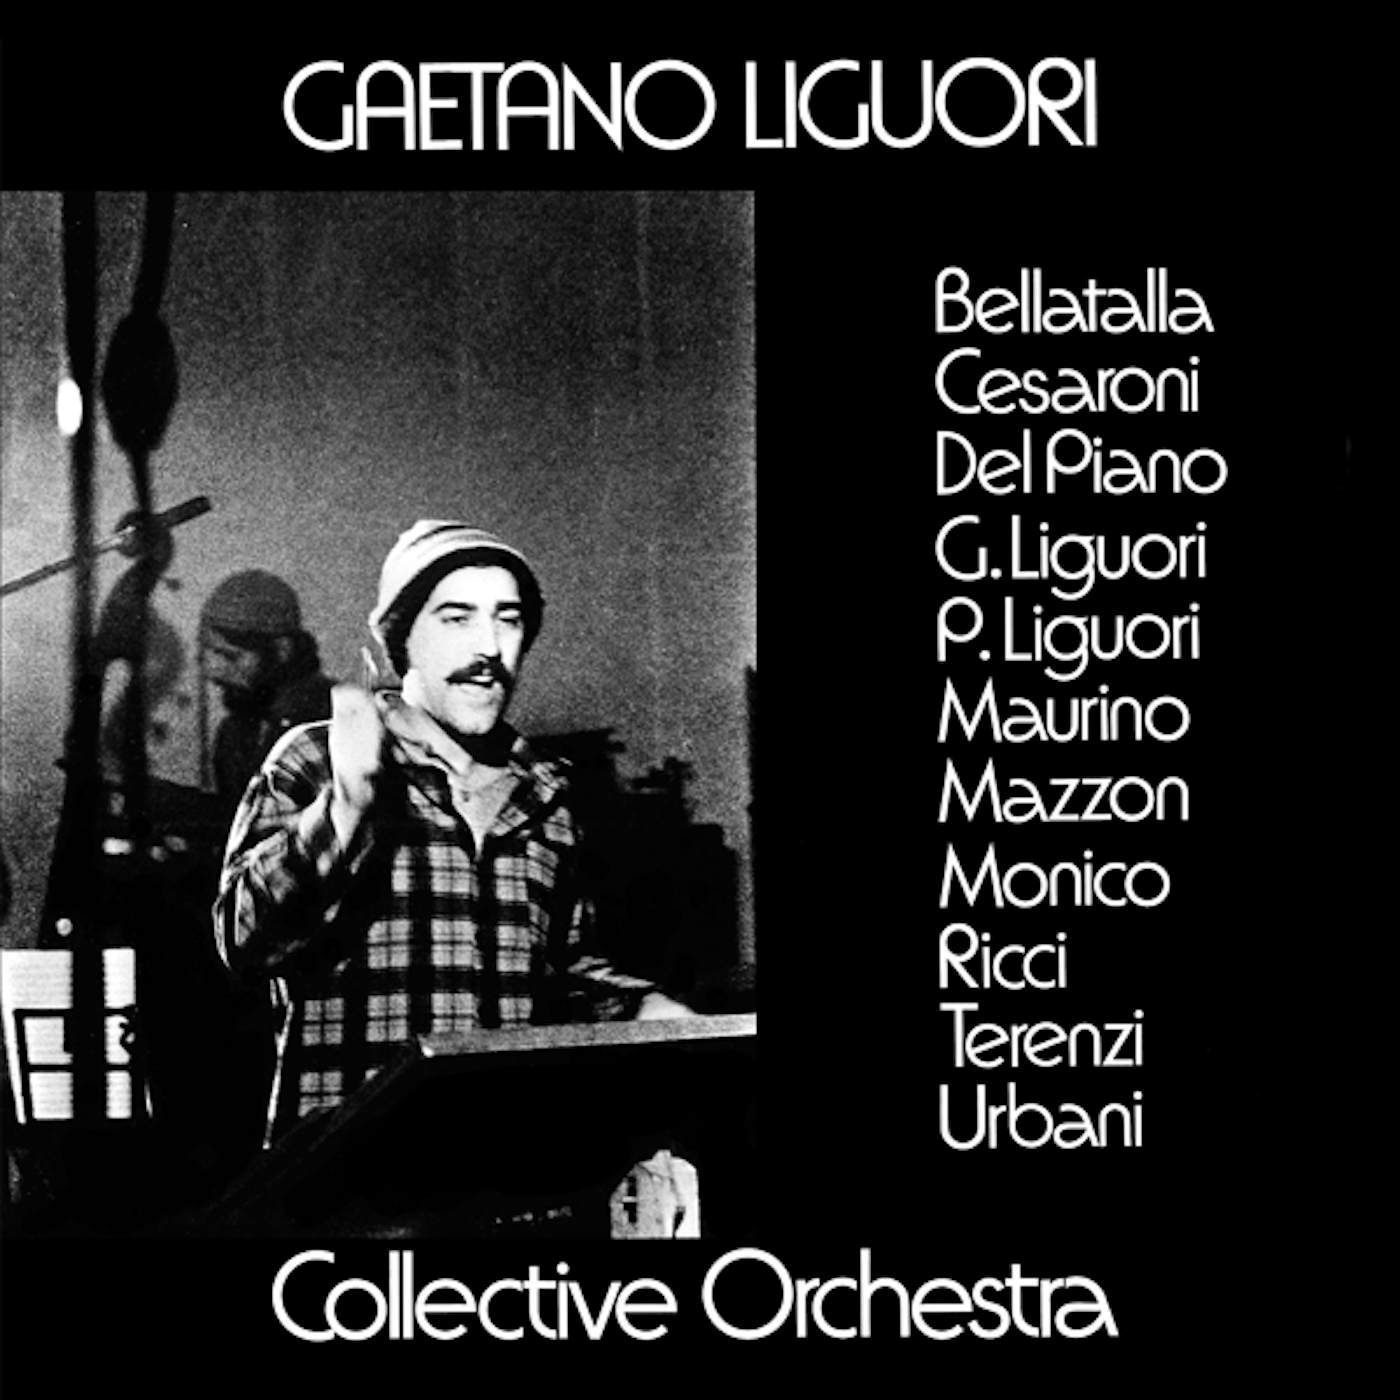 Gaetano Collective Orchestra Liguori Gaetano Liguori Collective Orchestra Vinyl Record